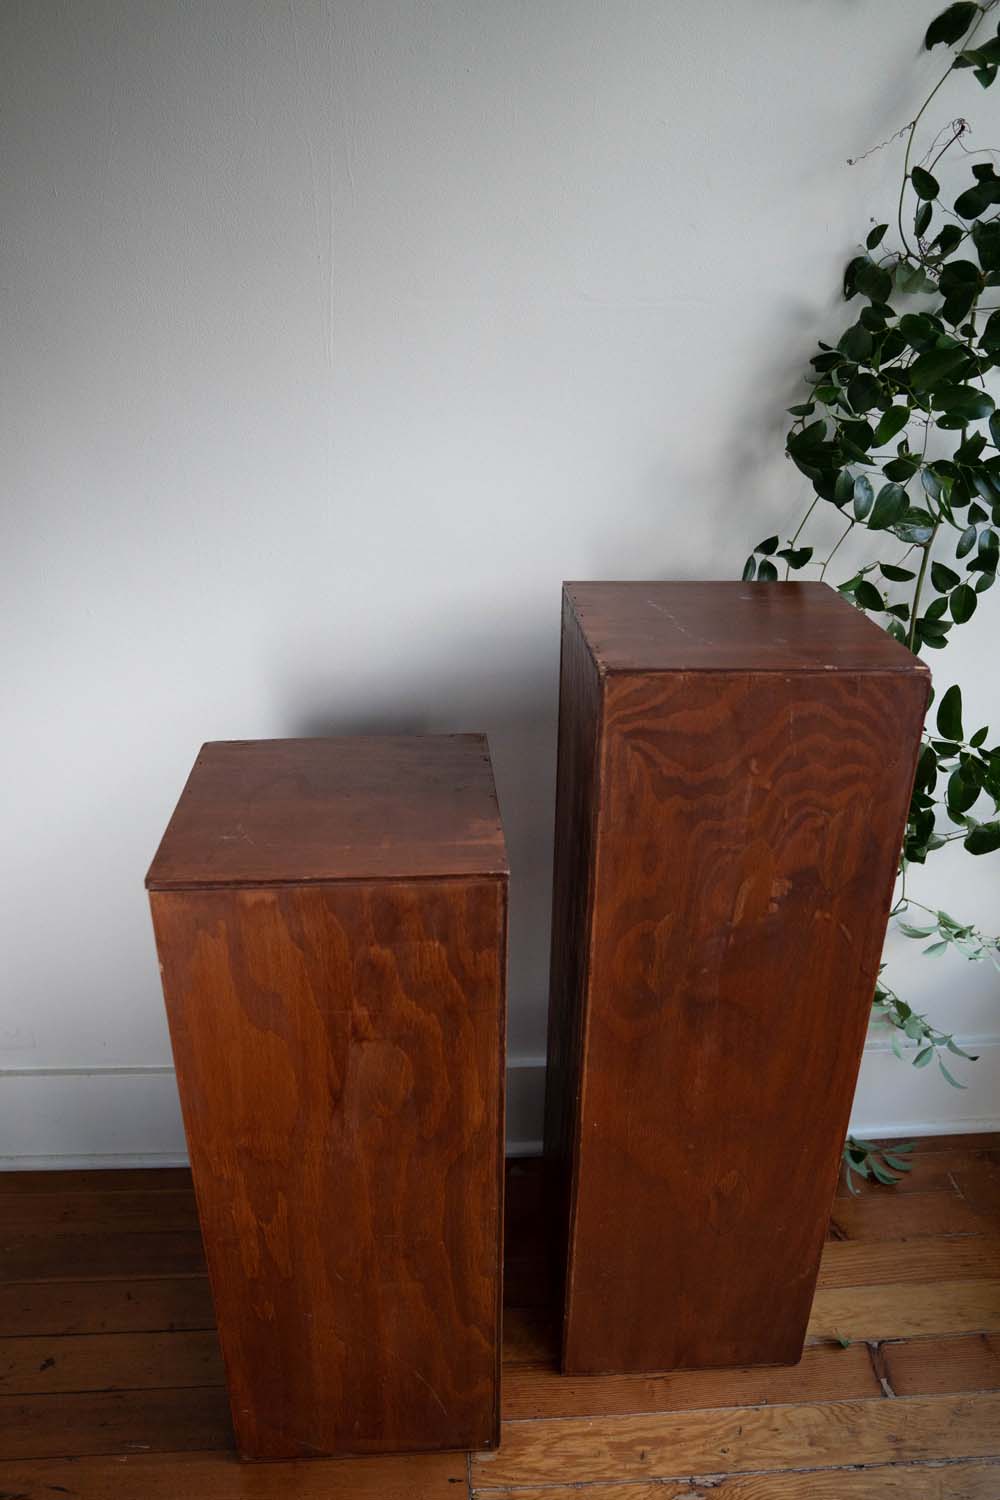 Wooden pedestals